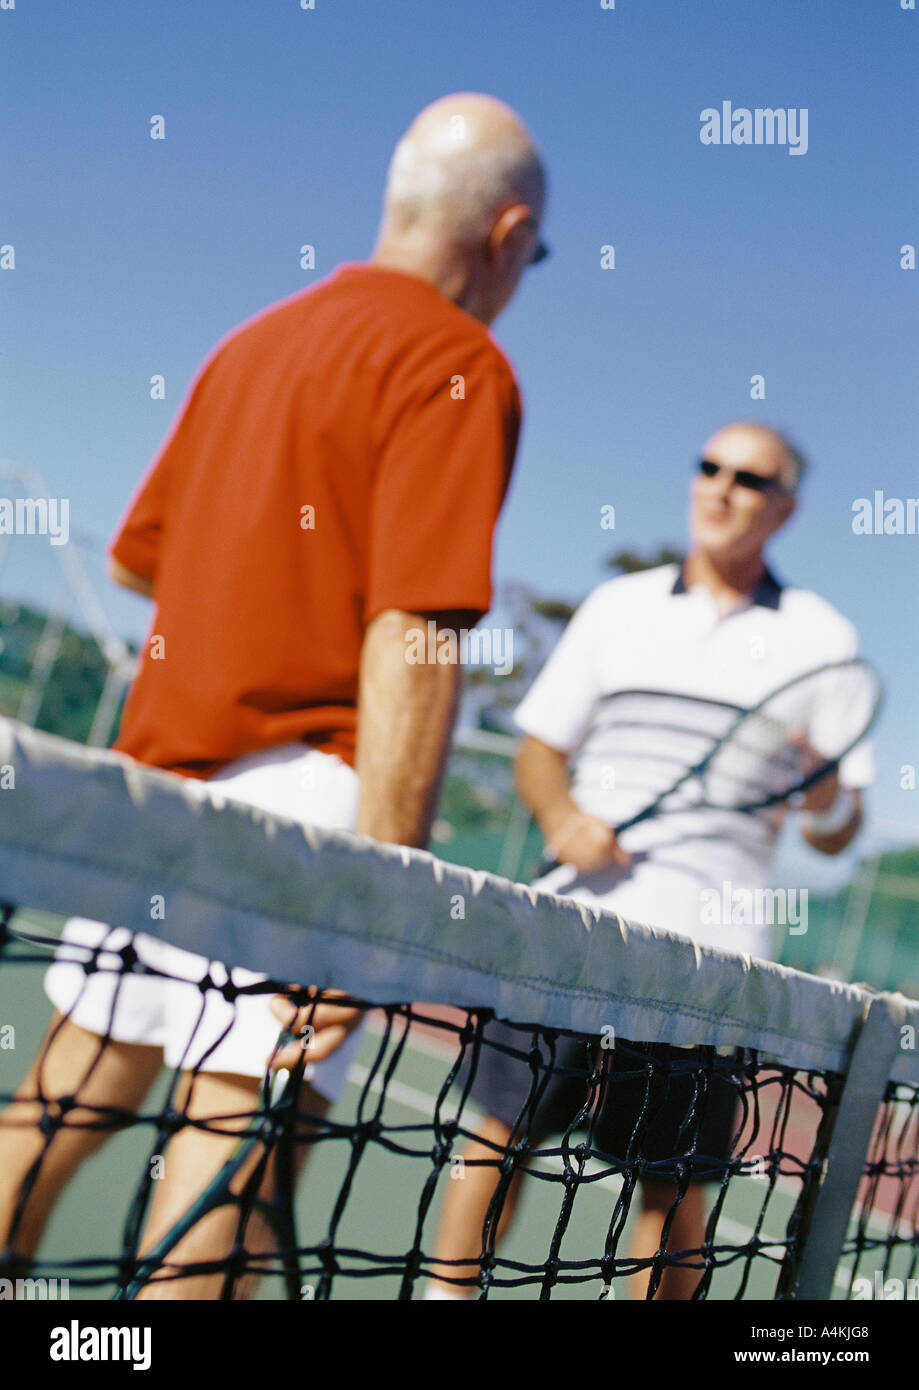 Les joueurs de tennis à maturité Banque D'Images